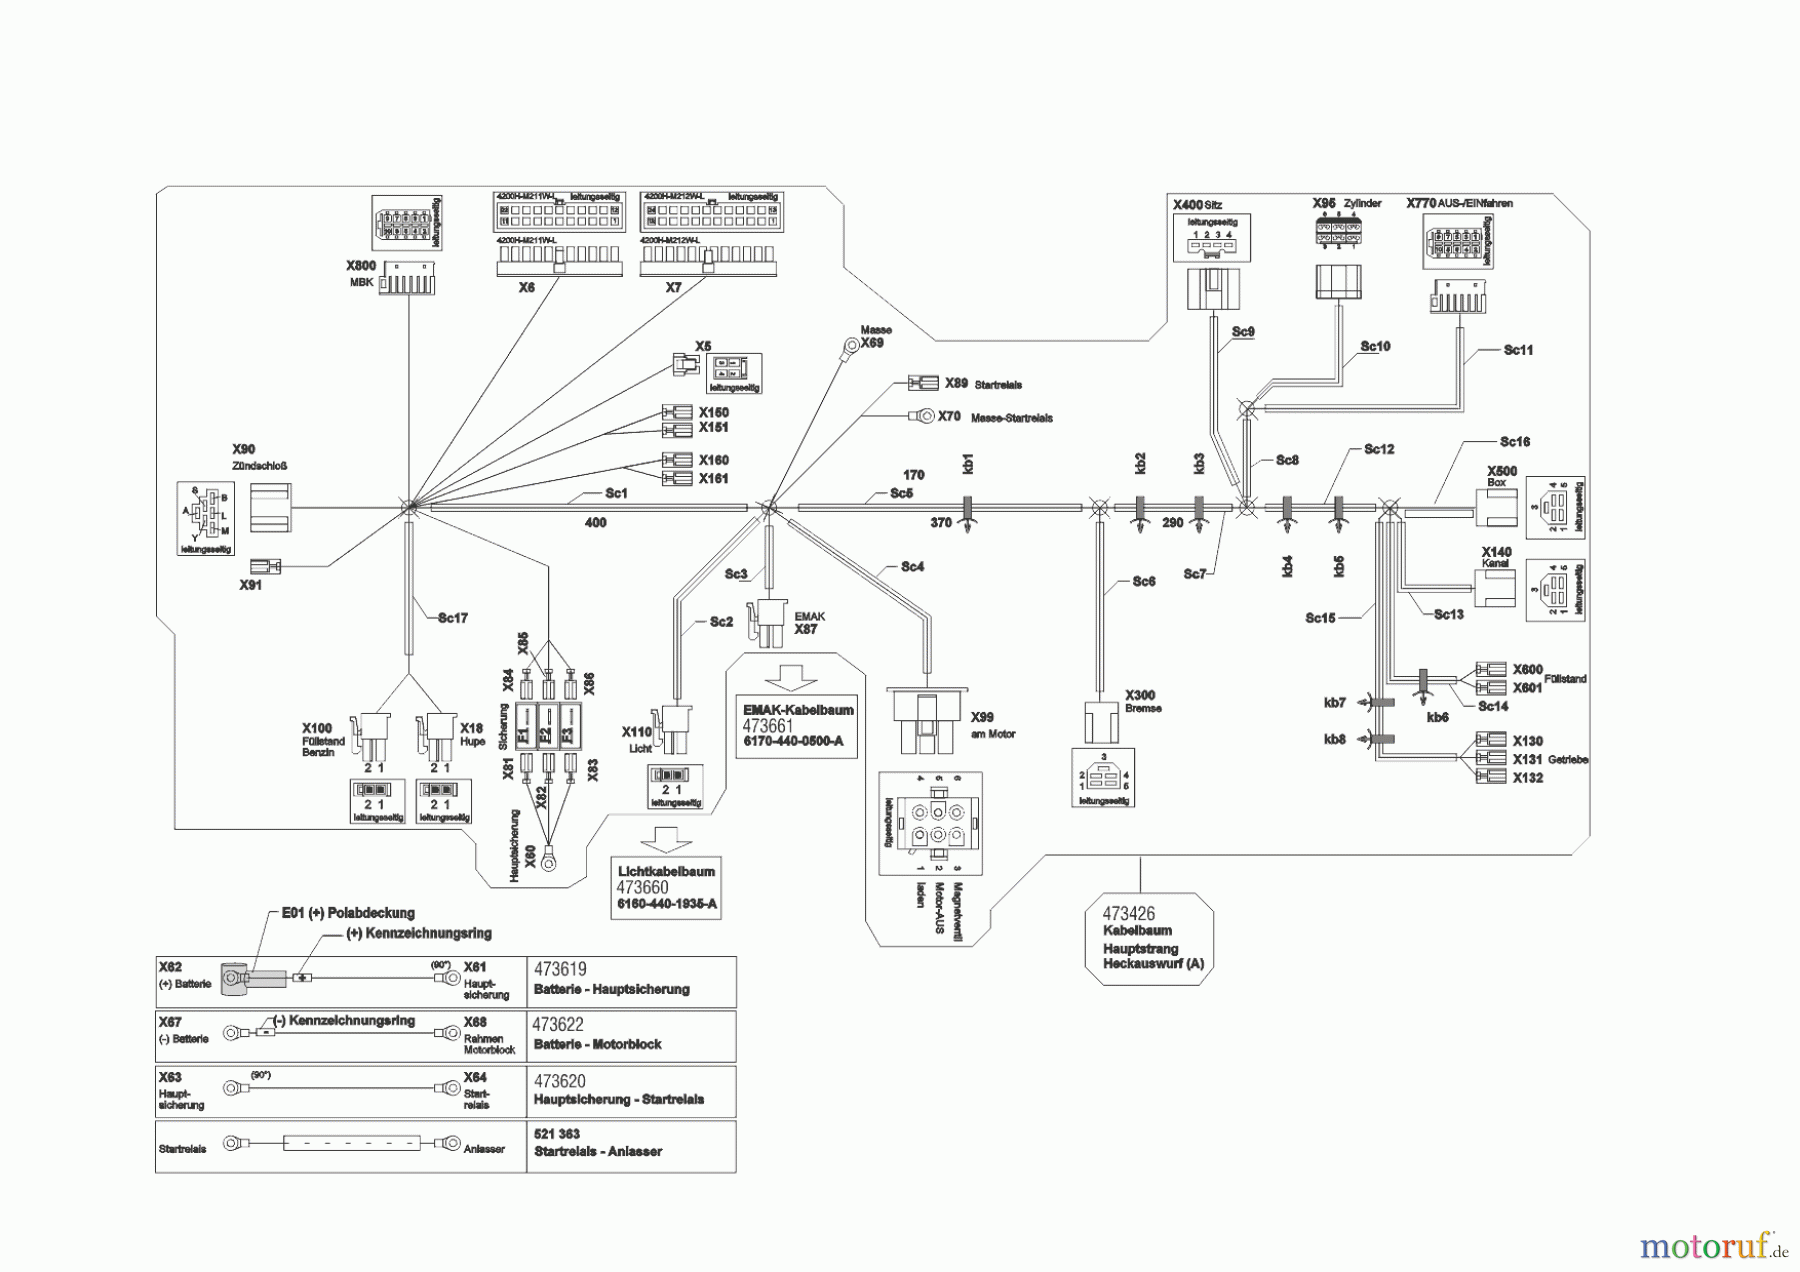  Powerline Gartentechnik Rasentraktor T20-105.4 HDE V2  09/2016 - 02/2019 Seite 10